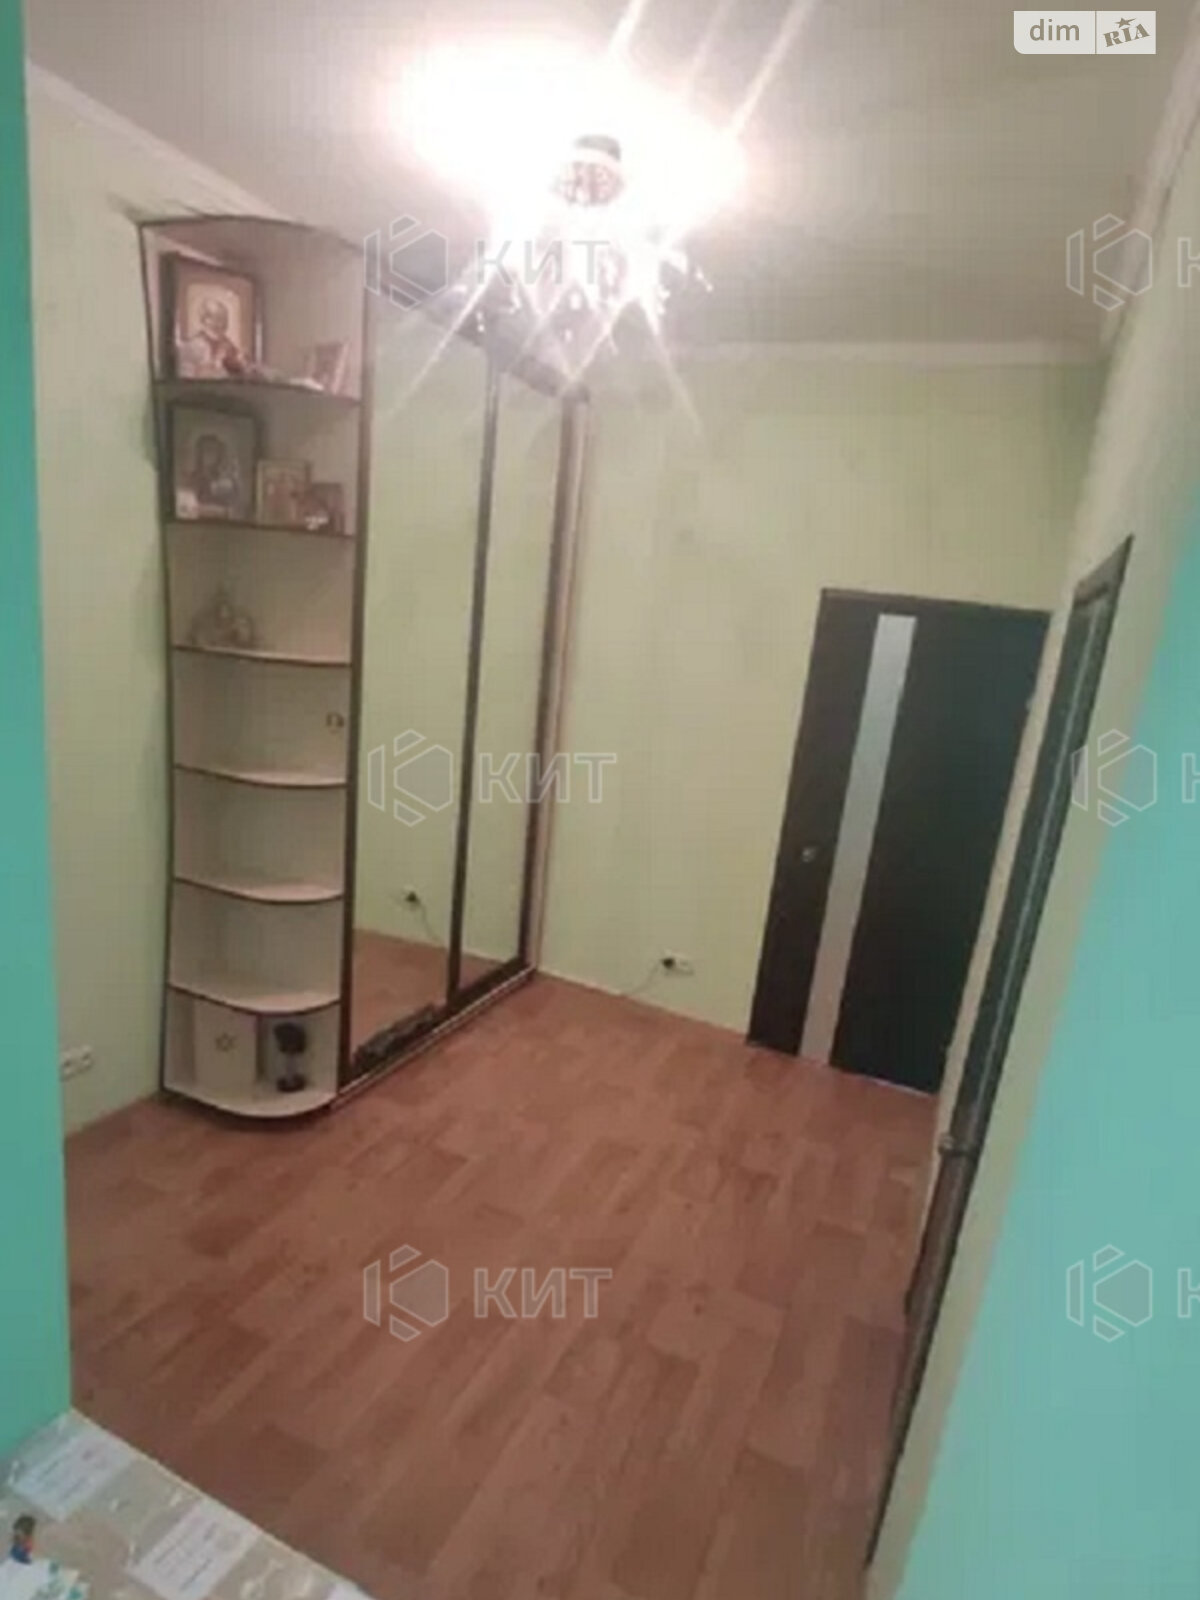 Продажа двухкомнатной квартиры в Харькове, на ул. Рубановская 9, район Холодная Гора фото 1